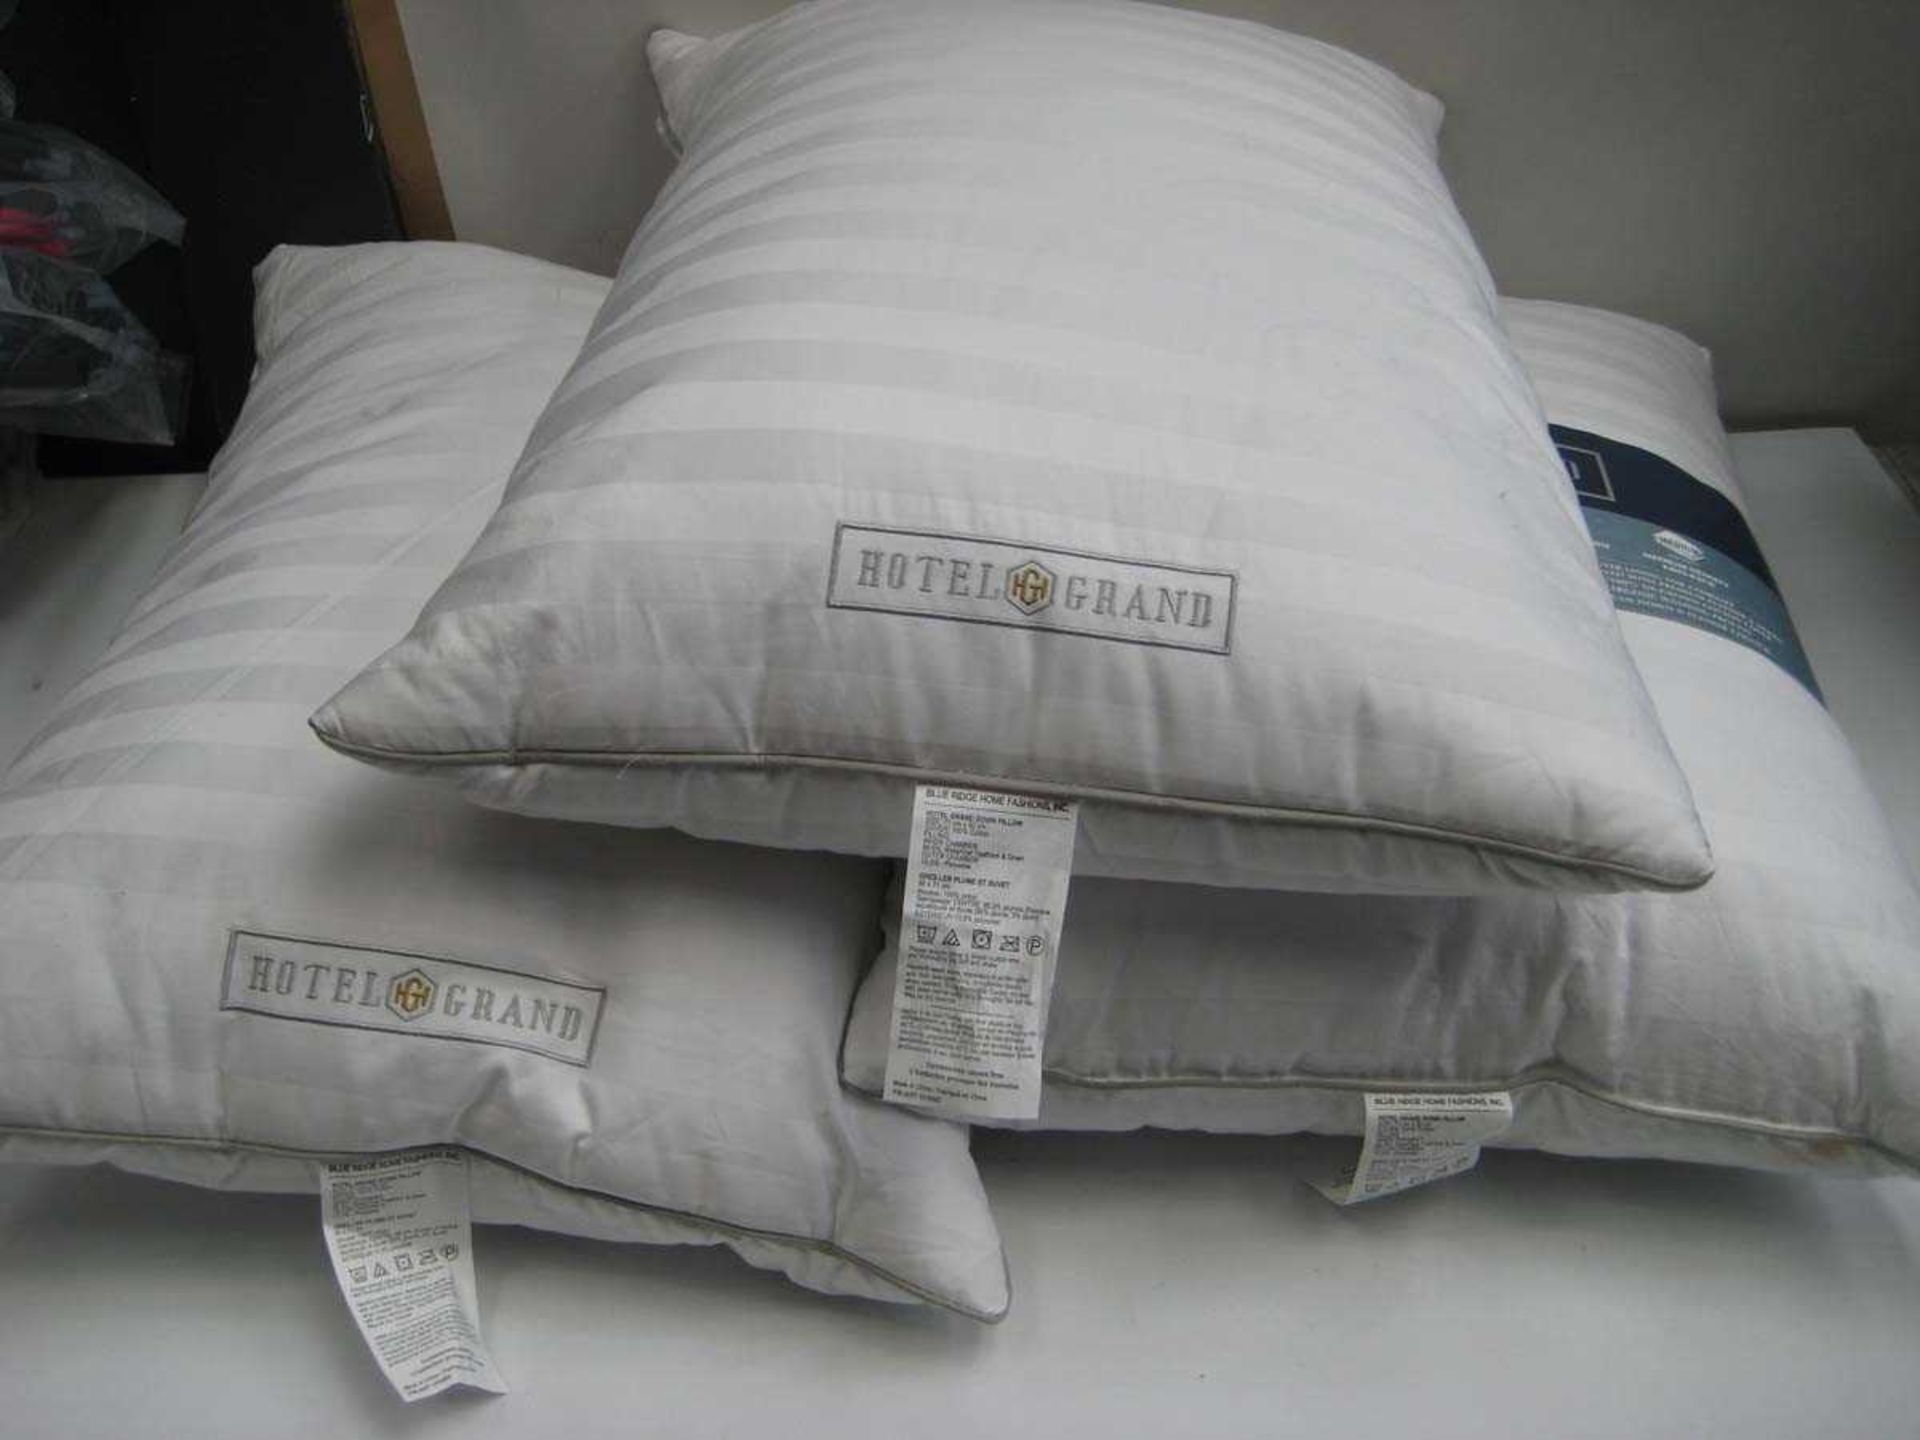 +VAT 3 Hotel Grand Pillows.